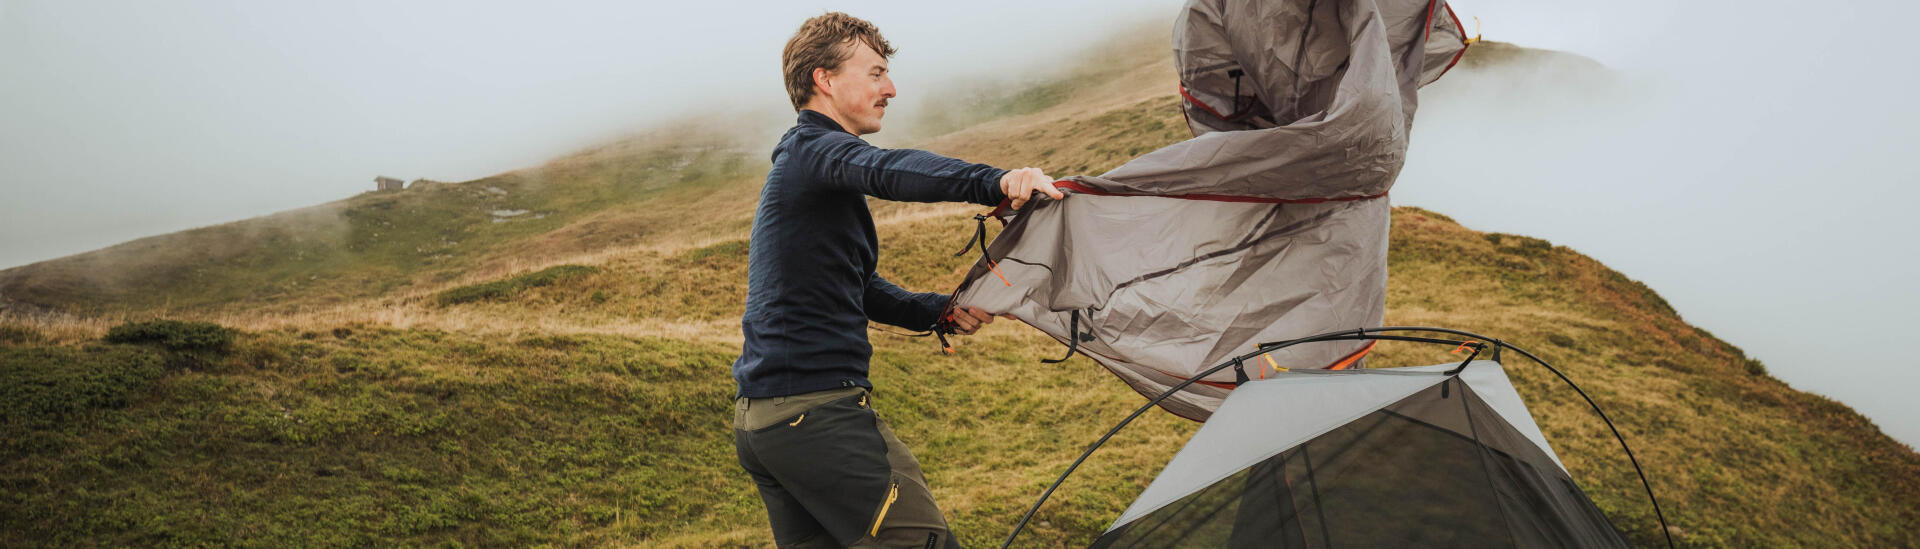 Come si ripara una tenda strappata? 